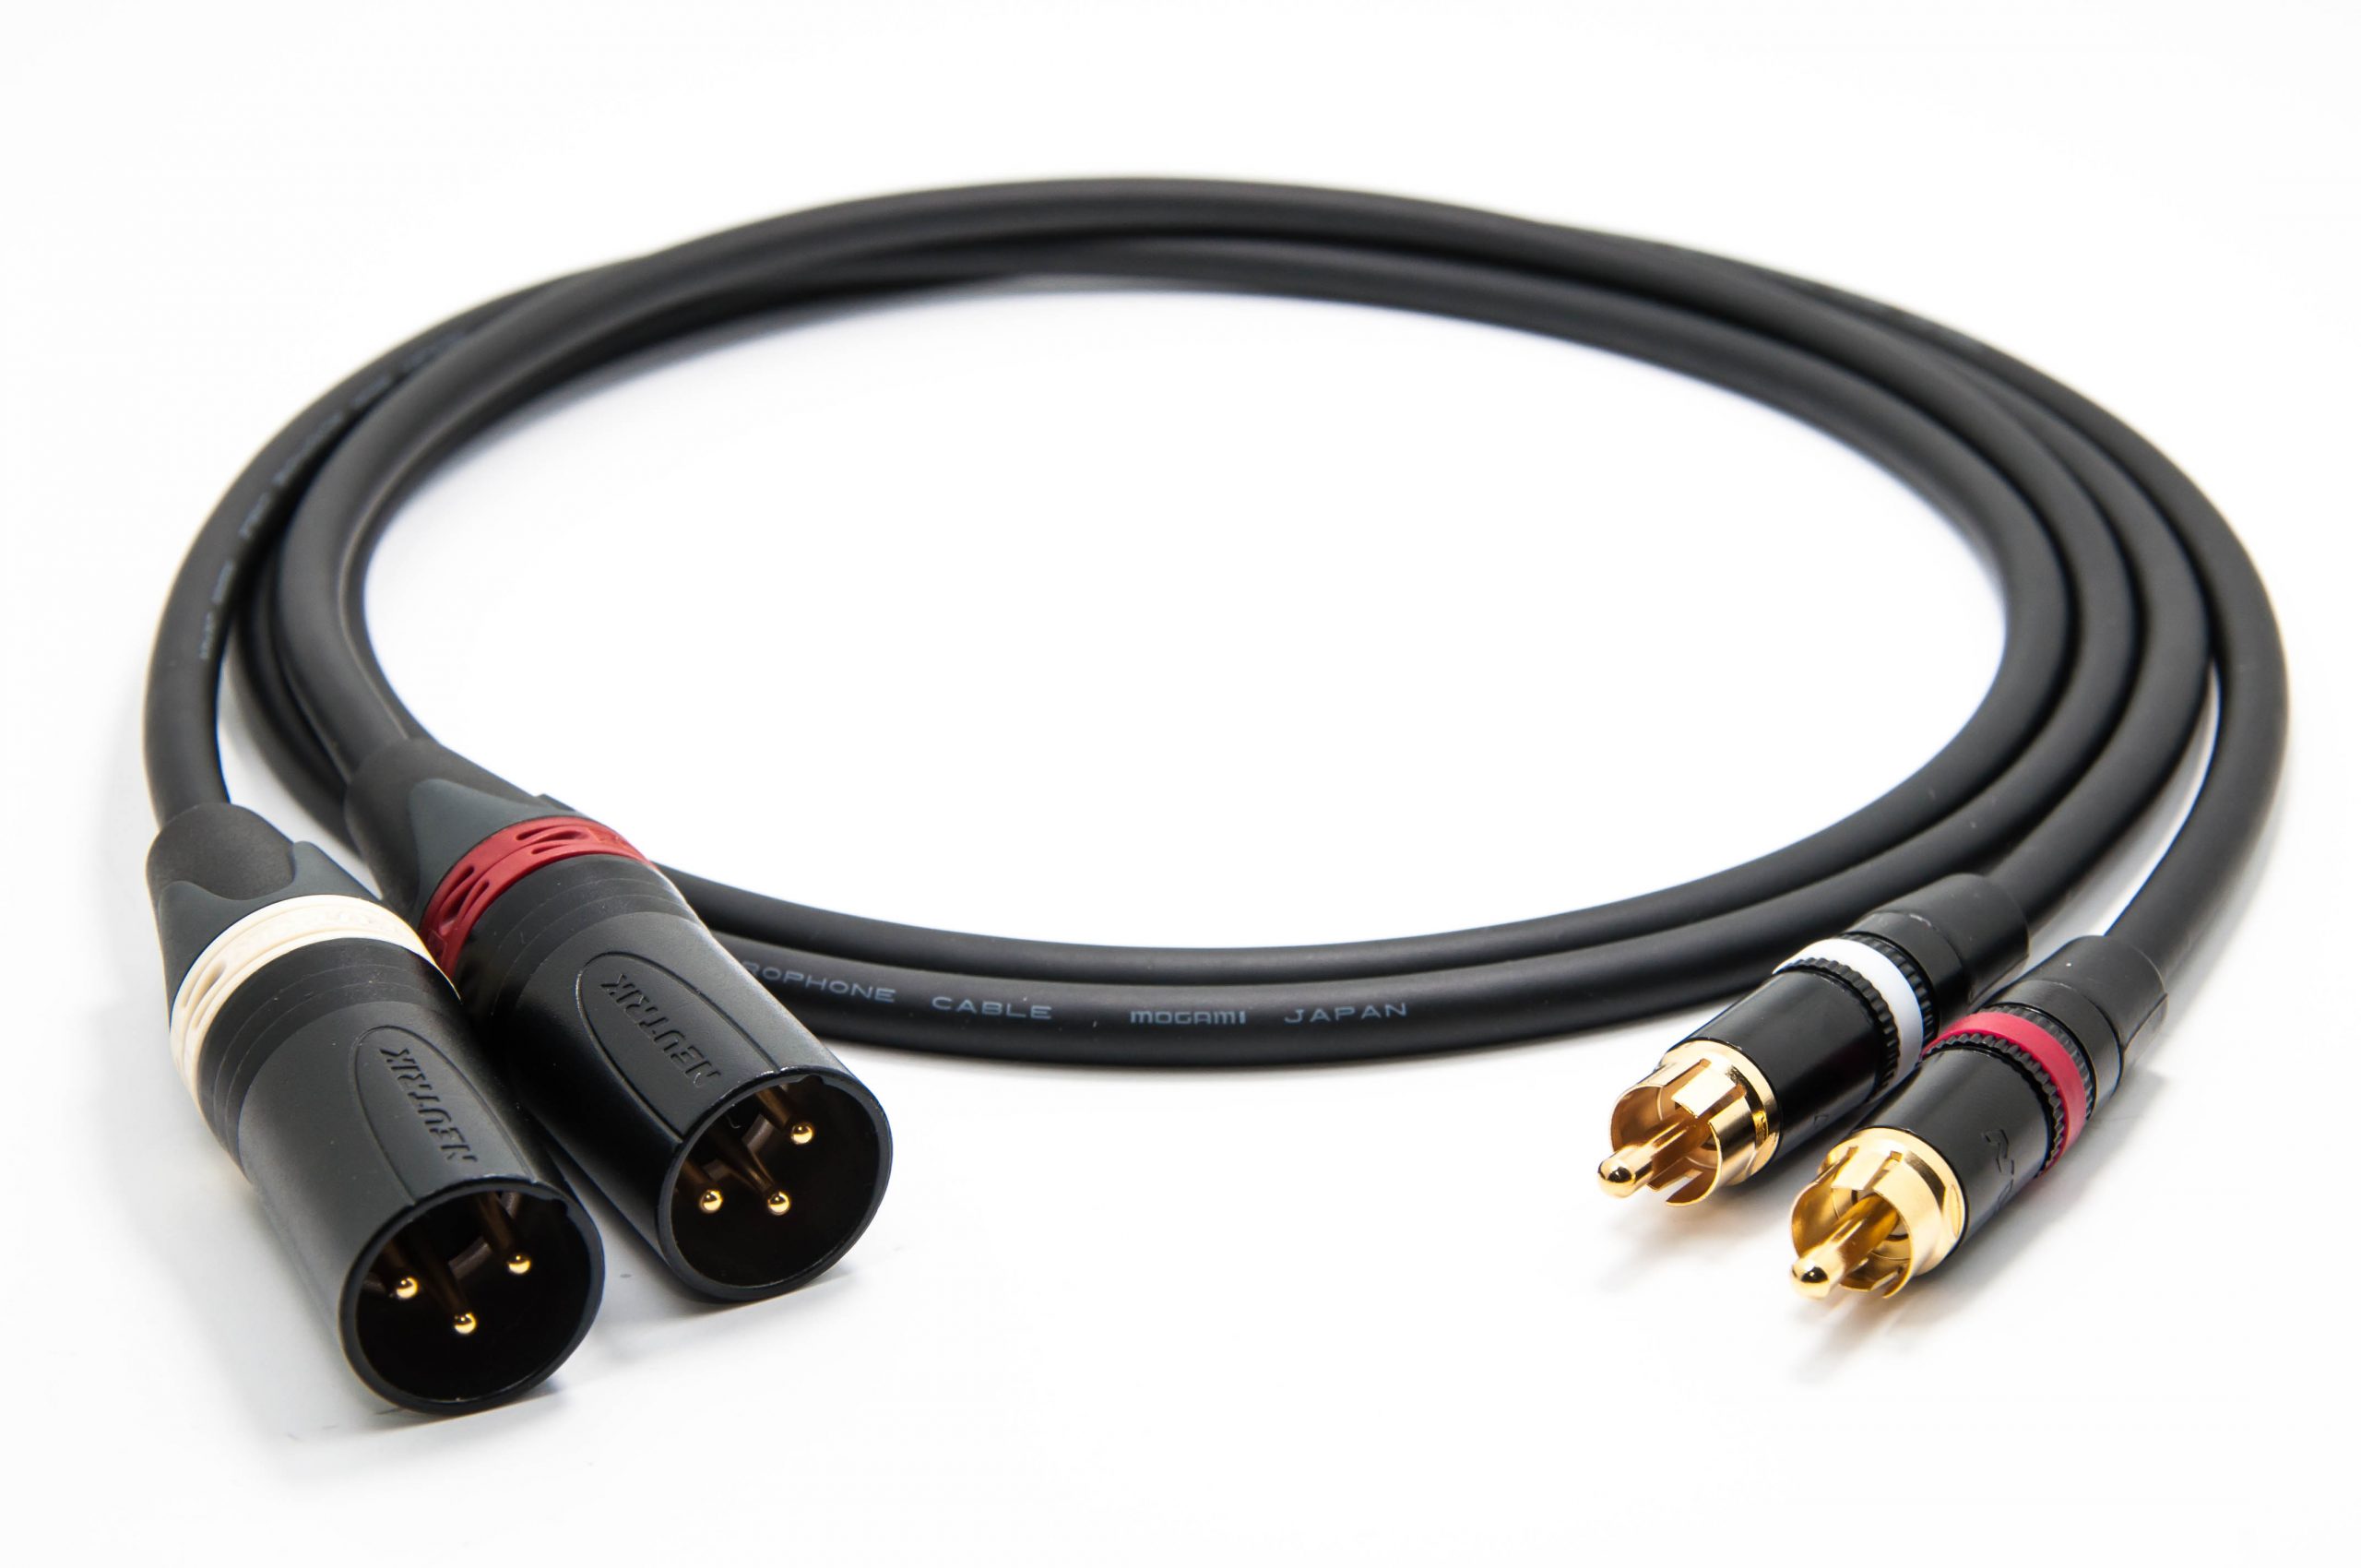 Mogami 2534 Quad Pair (L,R) Cable | Neutrik RCA - XLR-m | HiFi - enoaudio